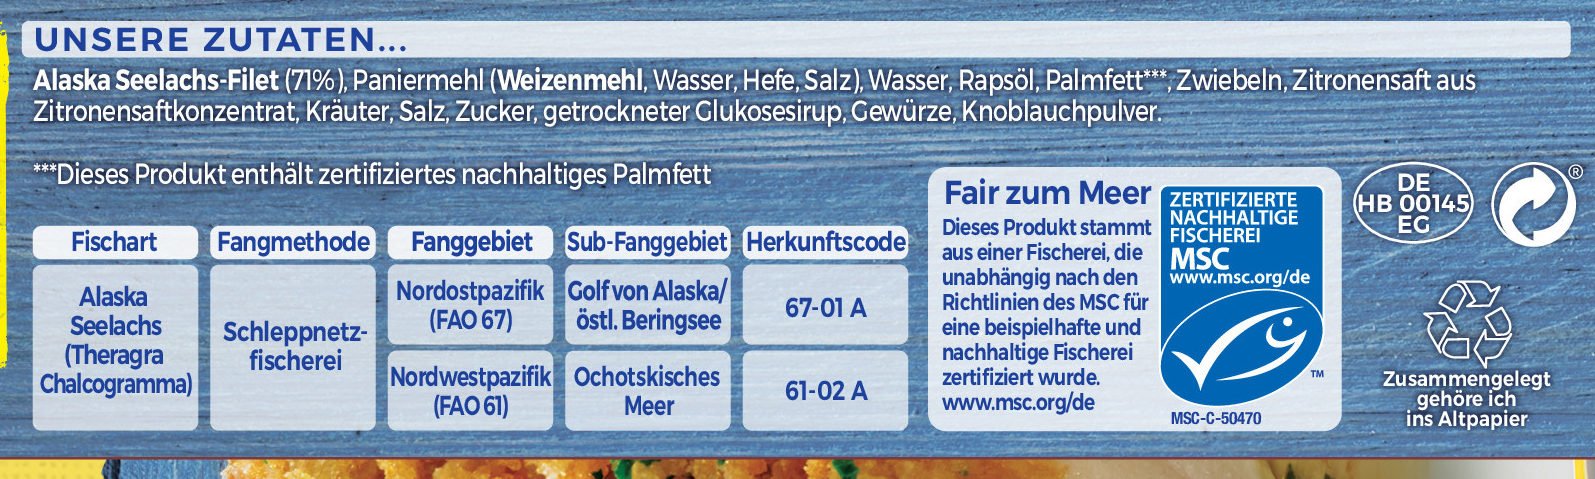 Schlemmer-Filet à la Bordelaise Classic - Ingredients - de